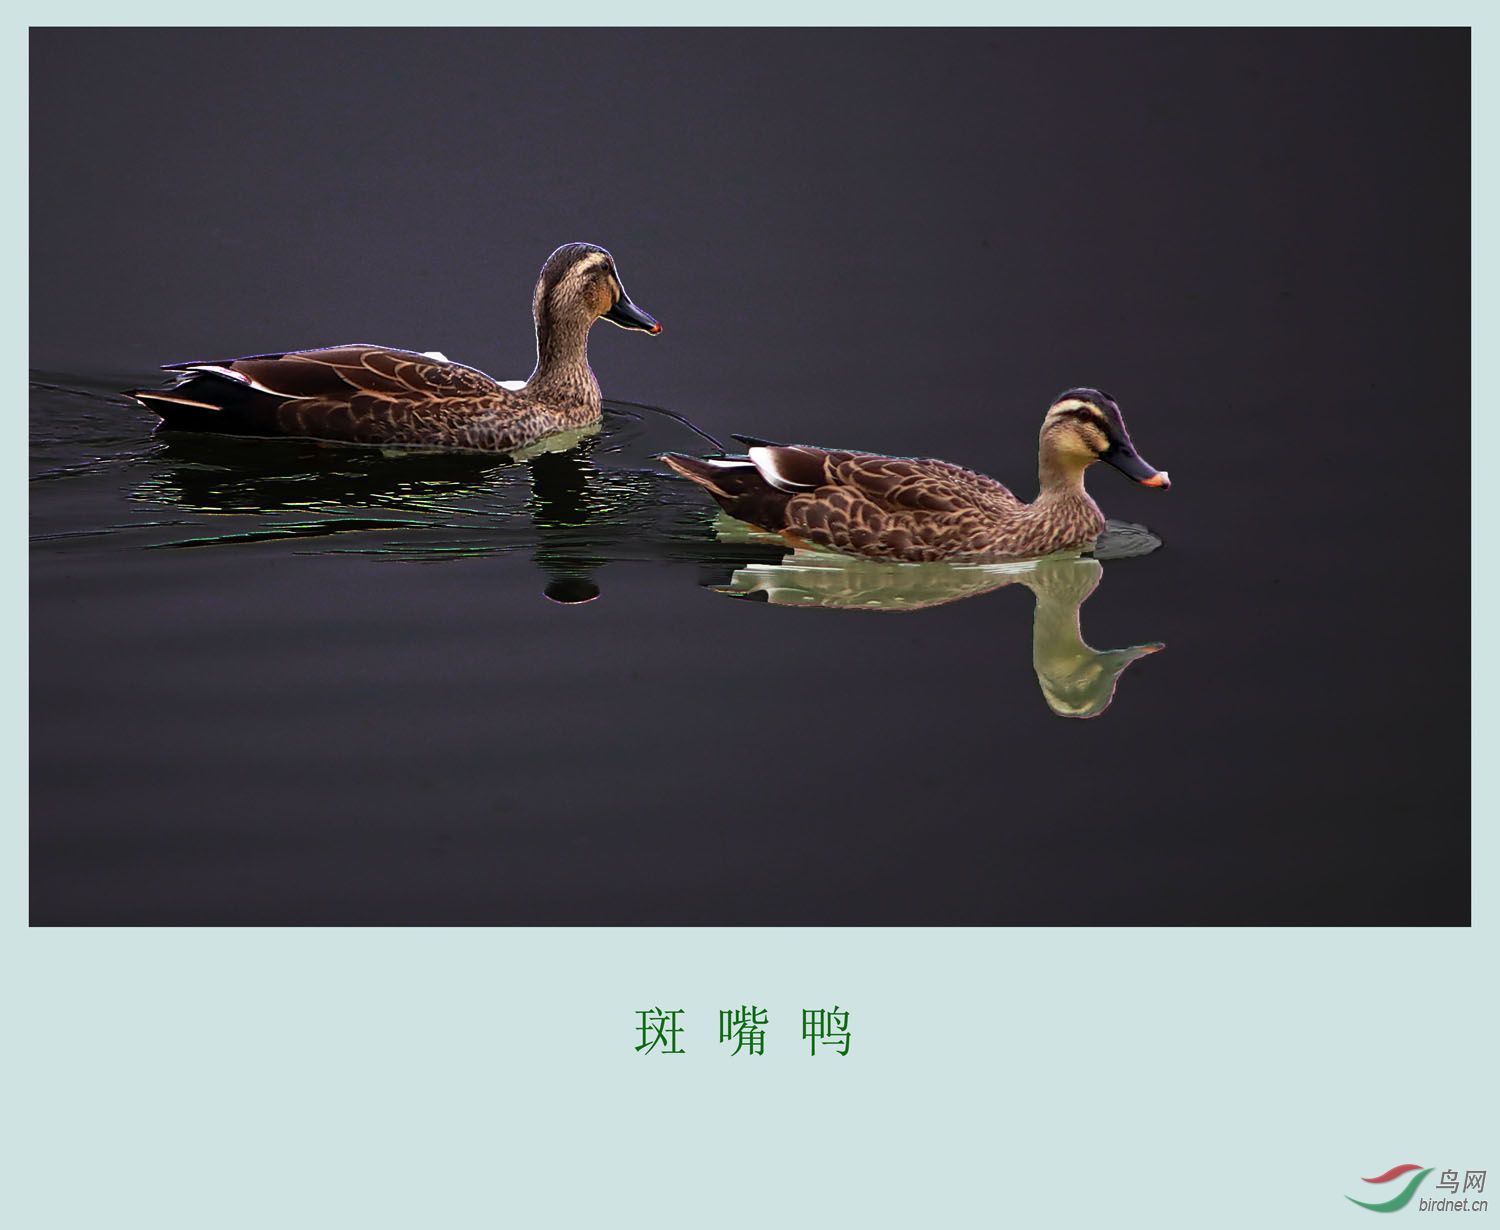 周二愉快 - 重庆版 Chongqing 鸟网